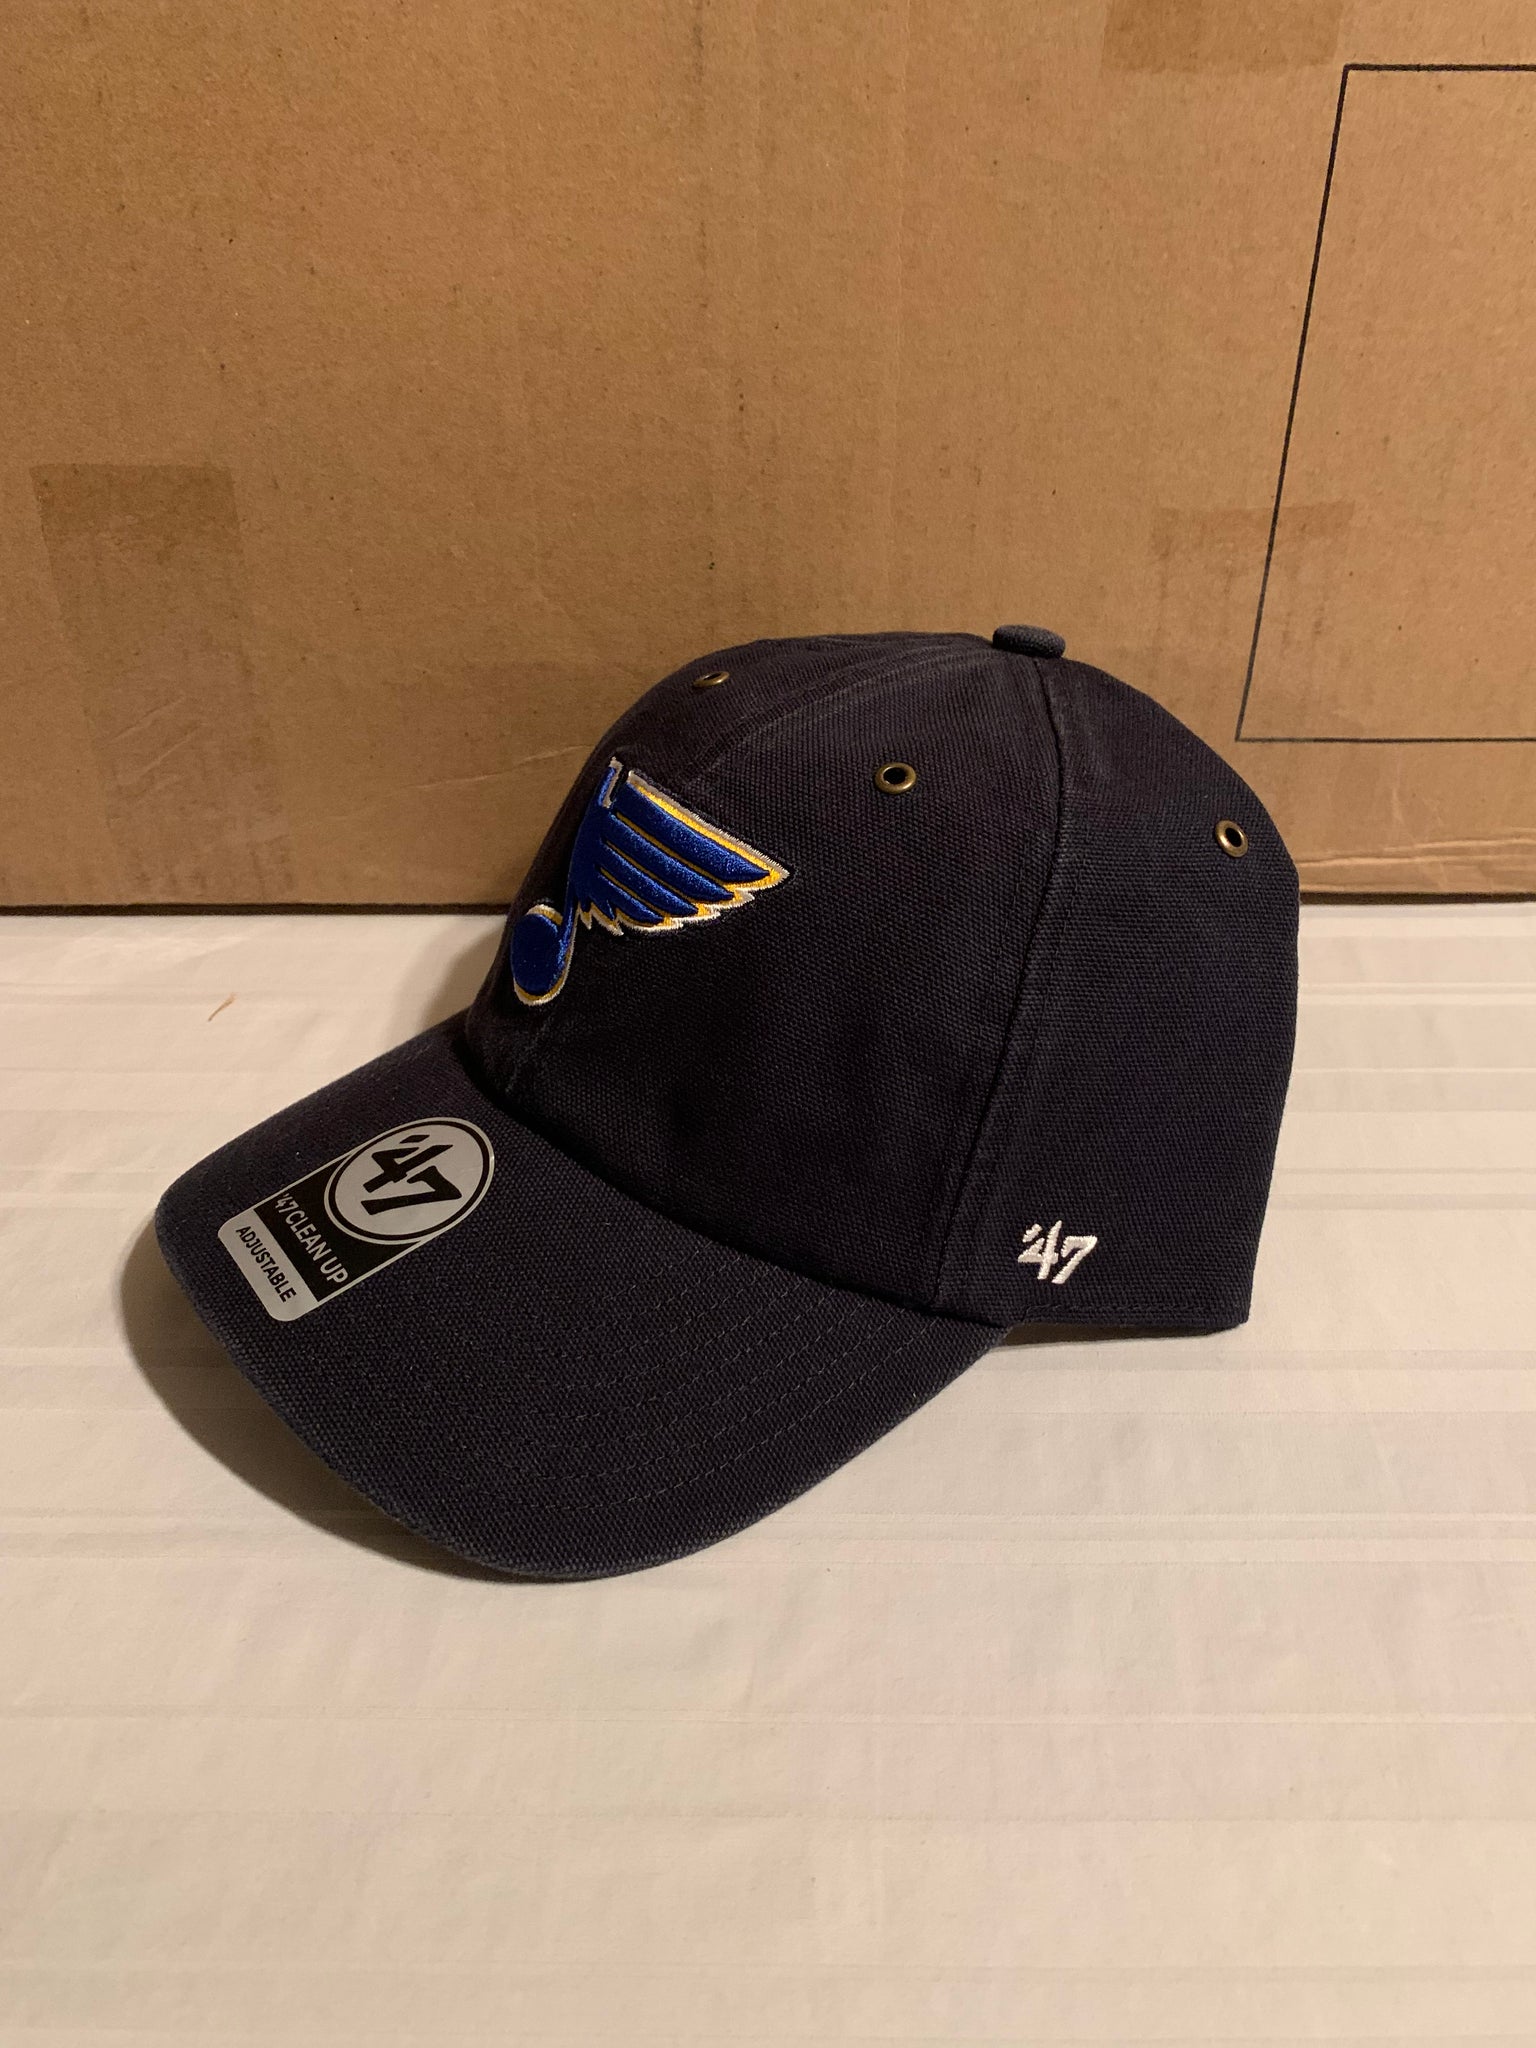 Men's '47 Blue St. Louis Blues Clean Up Adjustable Hat